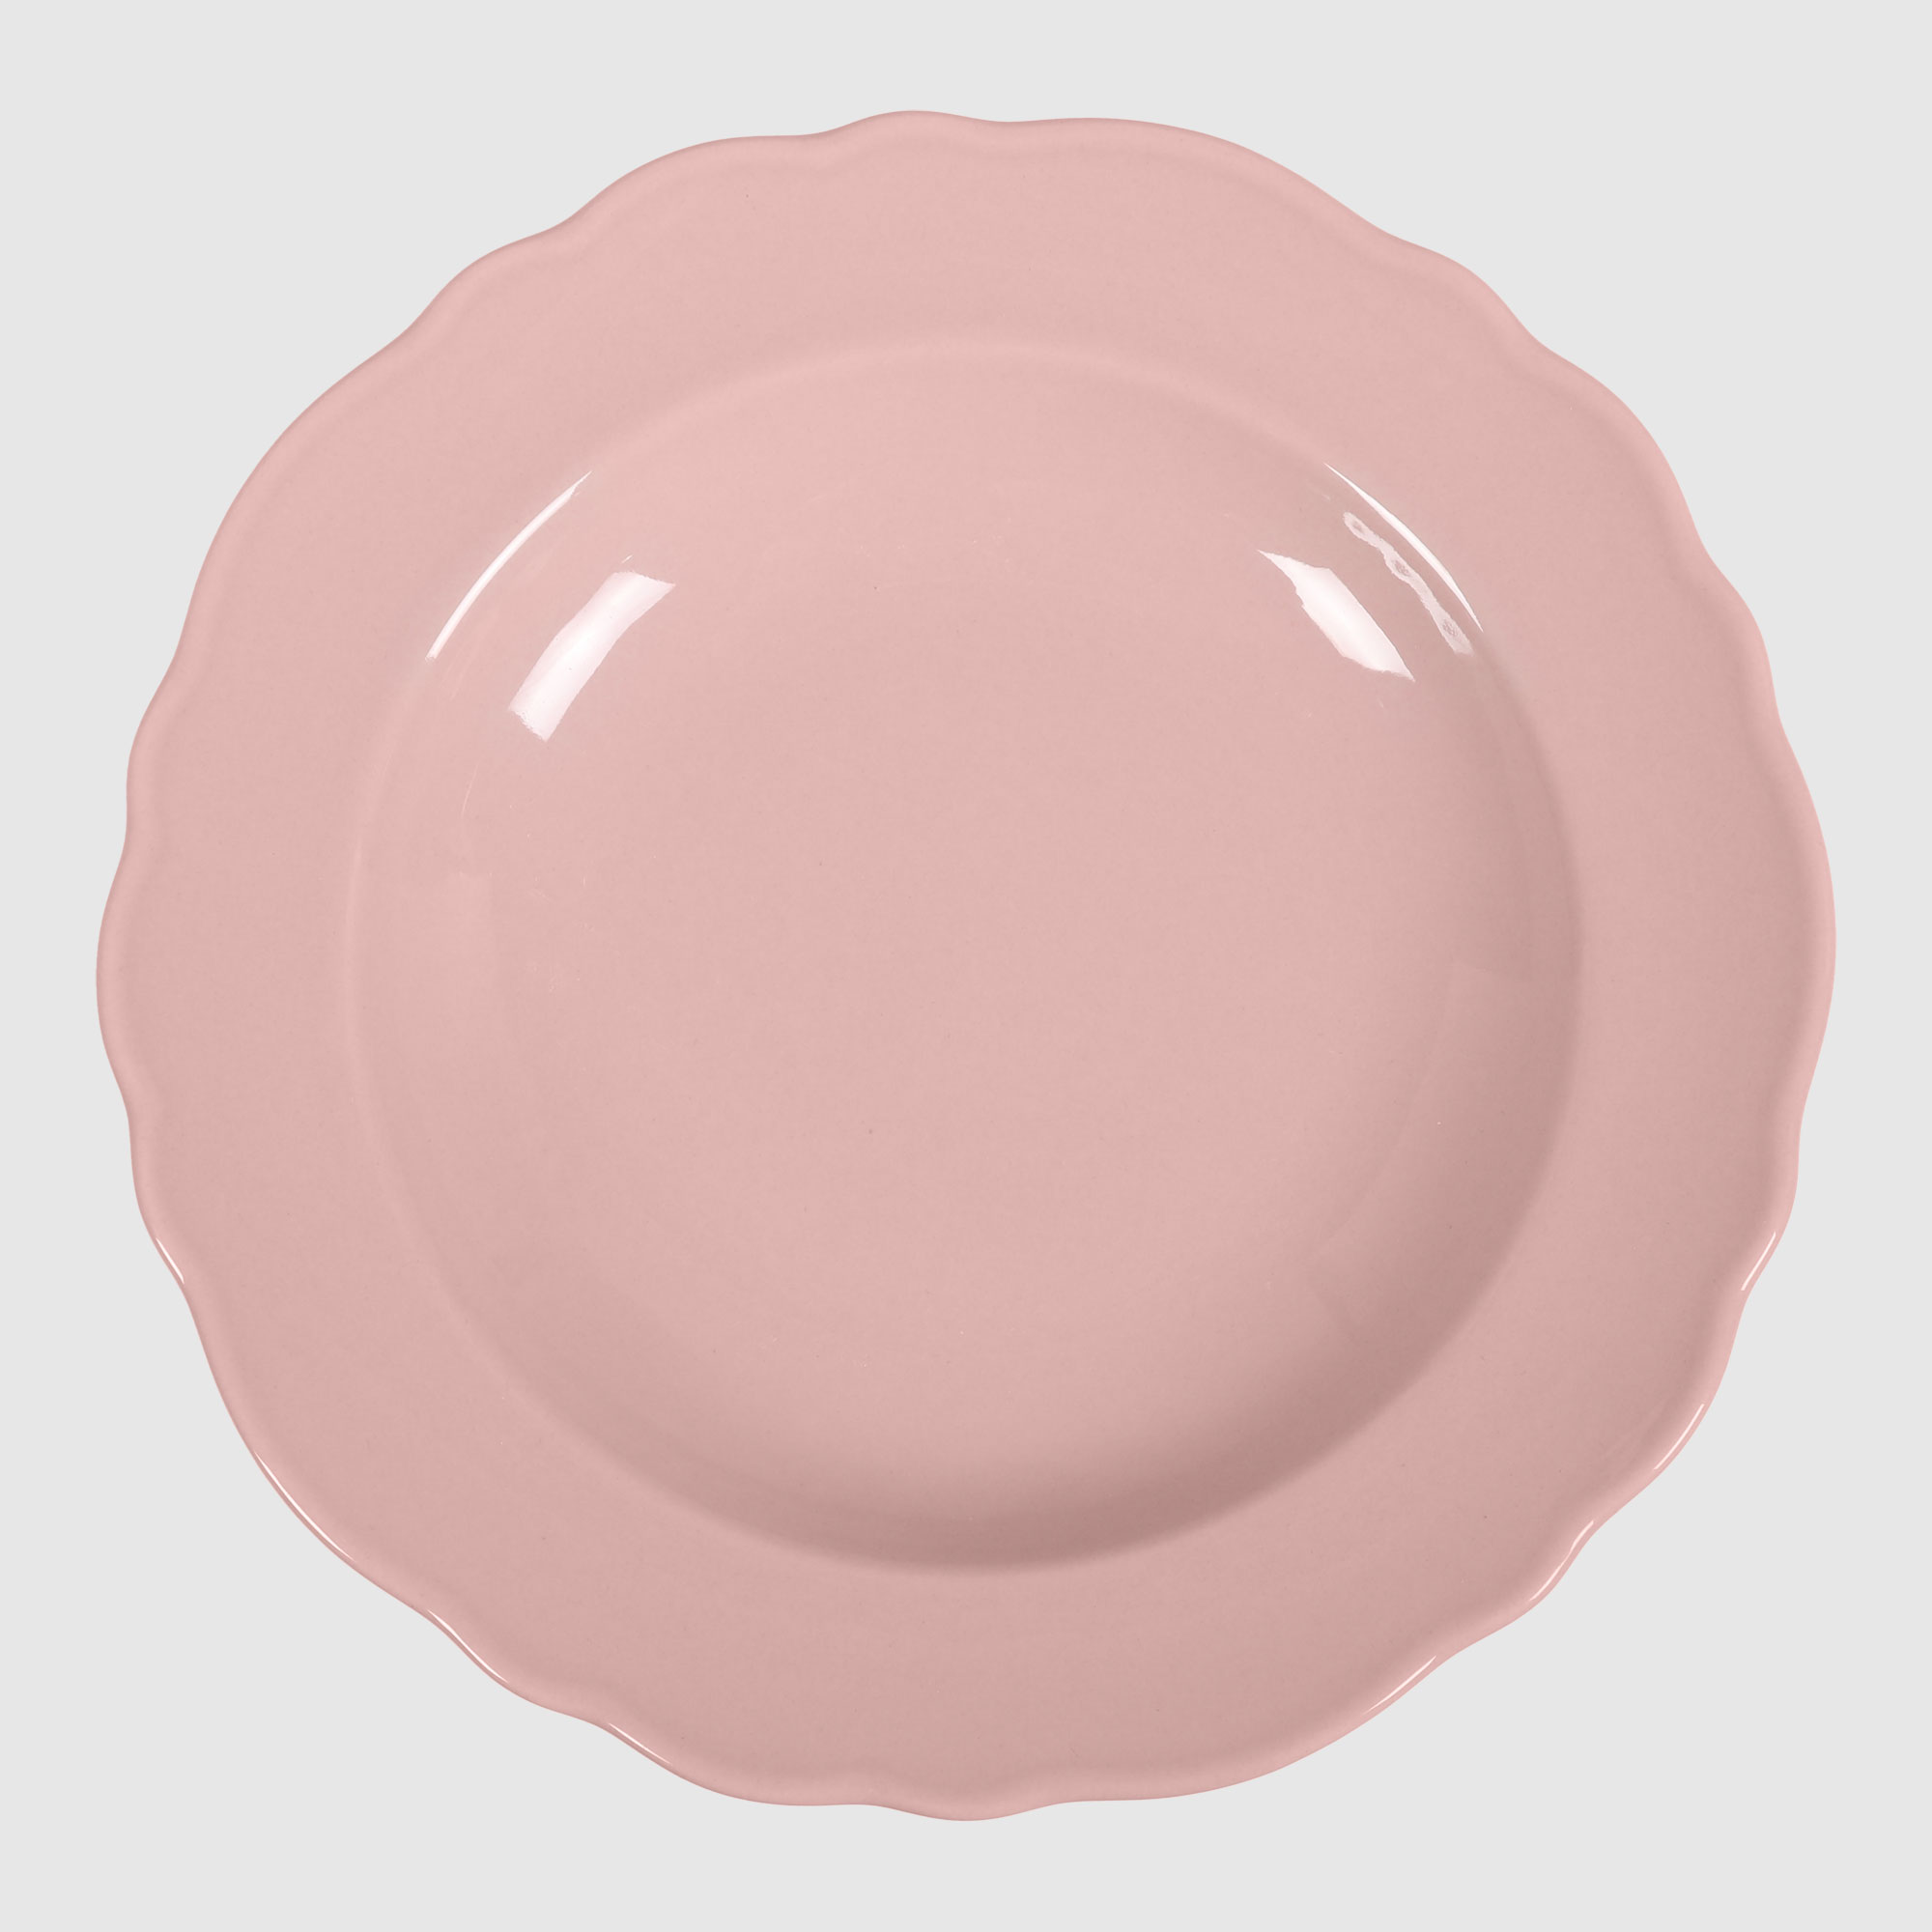 Тарелка глубокая Kutahya porselen Lar розовая 22 см тарелка суповая 22 см kutahya porselen irem недекорированная